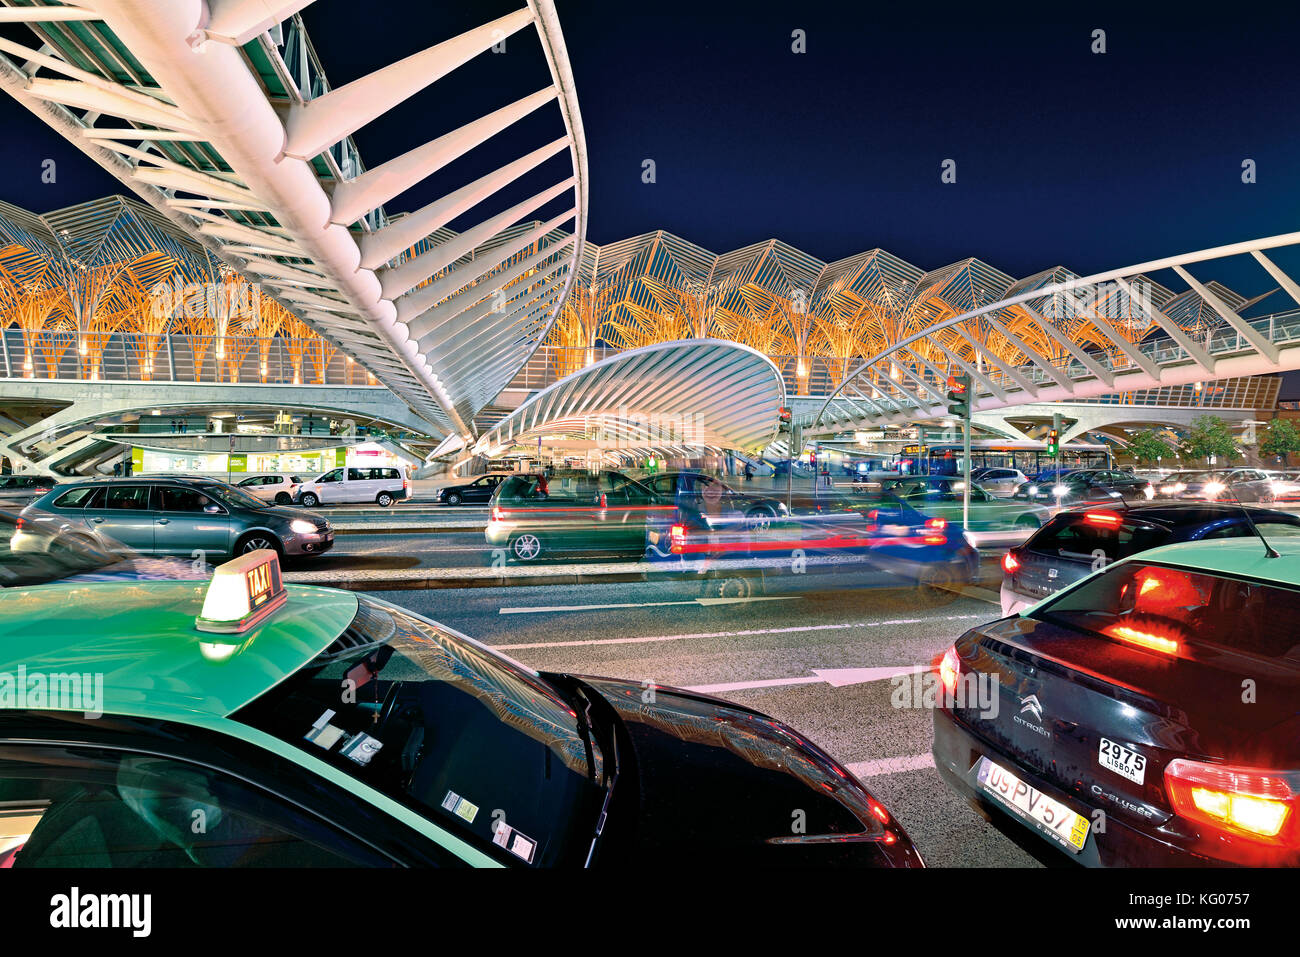 Coches y taxis moviéndose por la noche frente a la construcción futurista de techos de acero Foto de stock